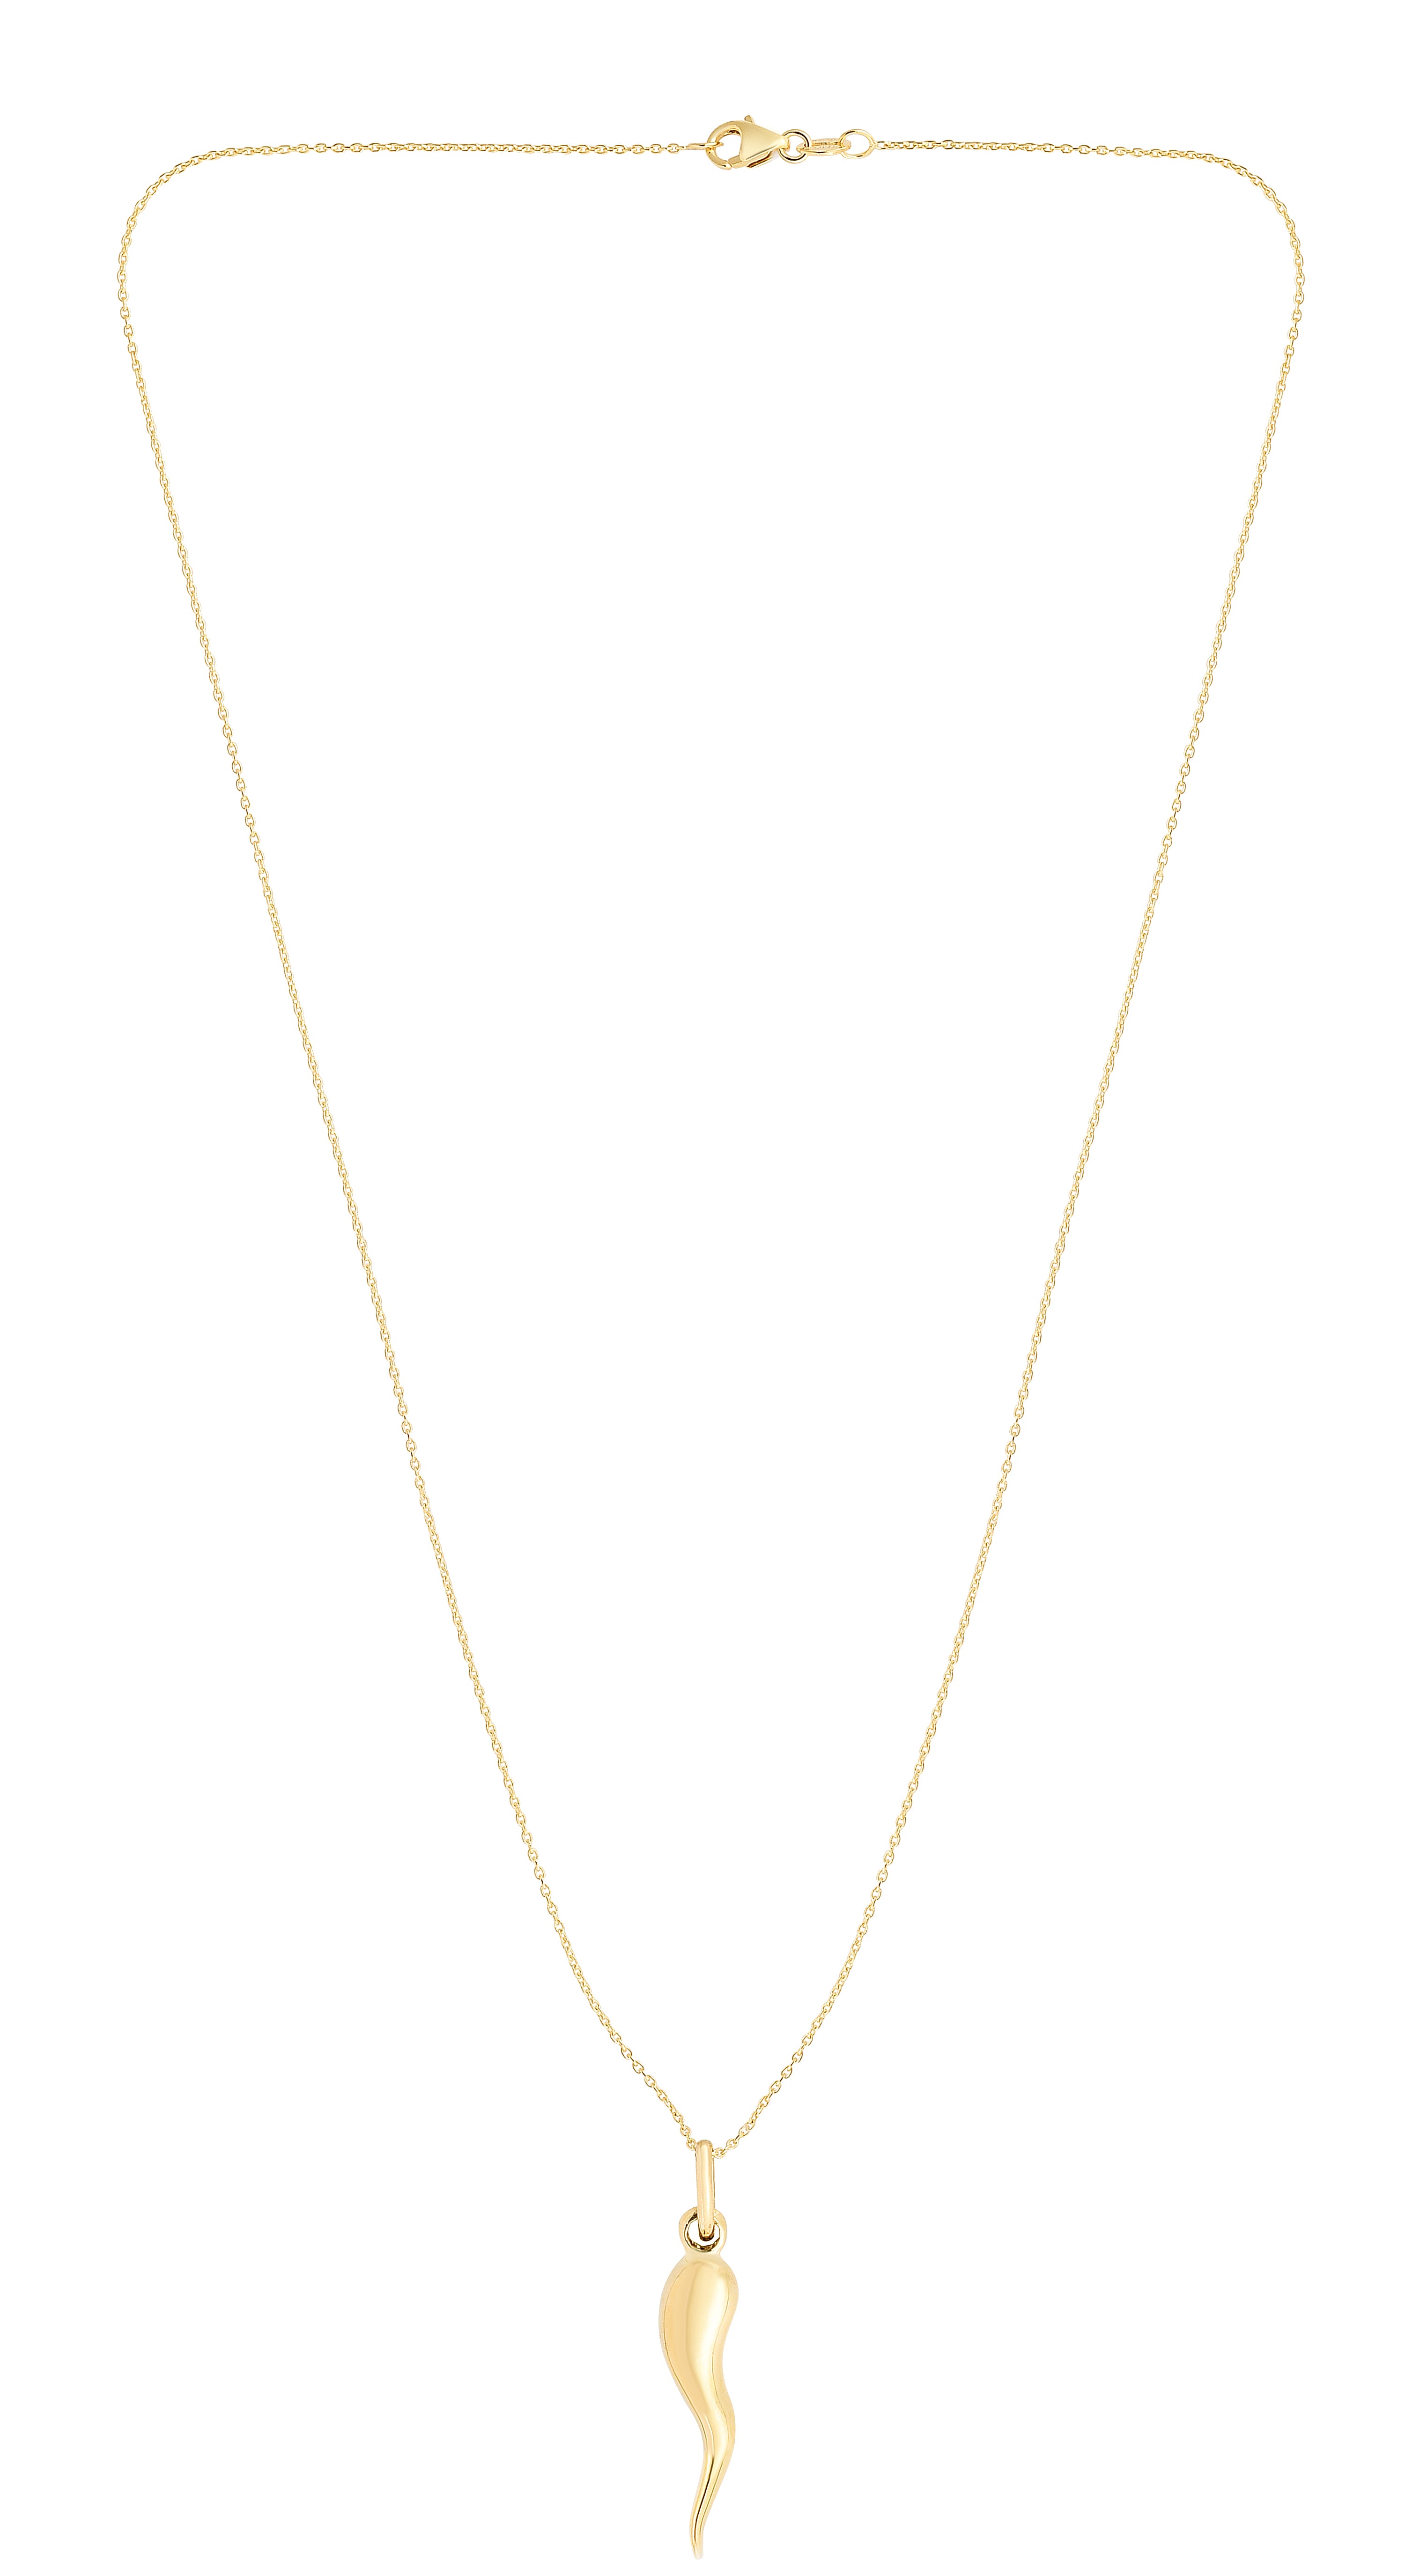 Gold Italian horn necklace | Cornicello necklace for men or women